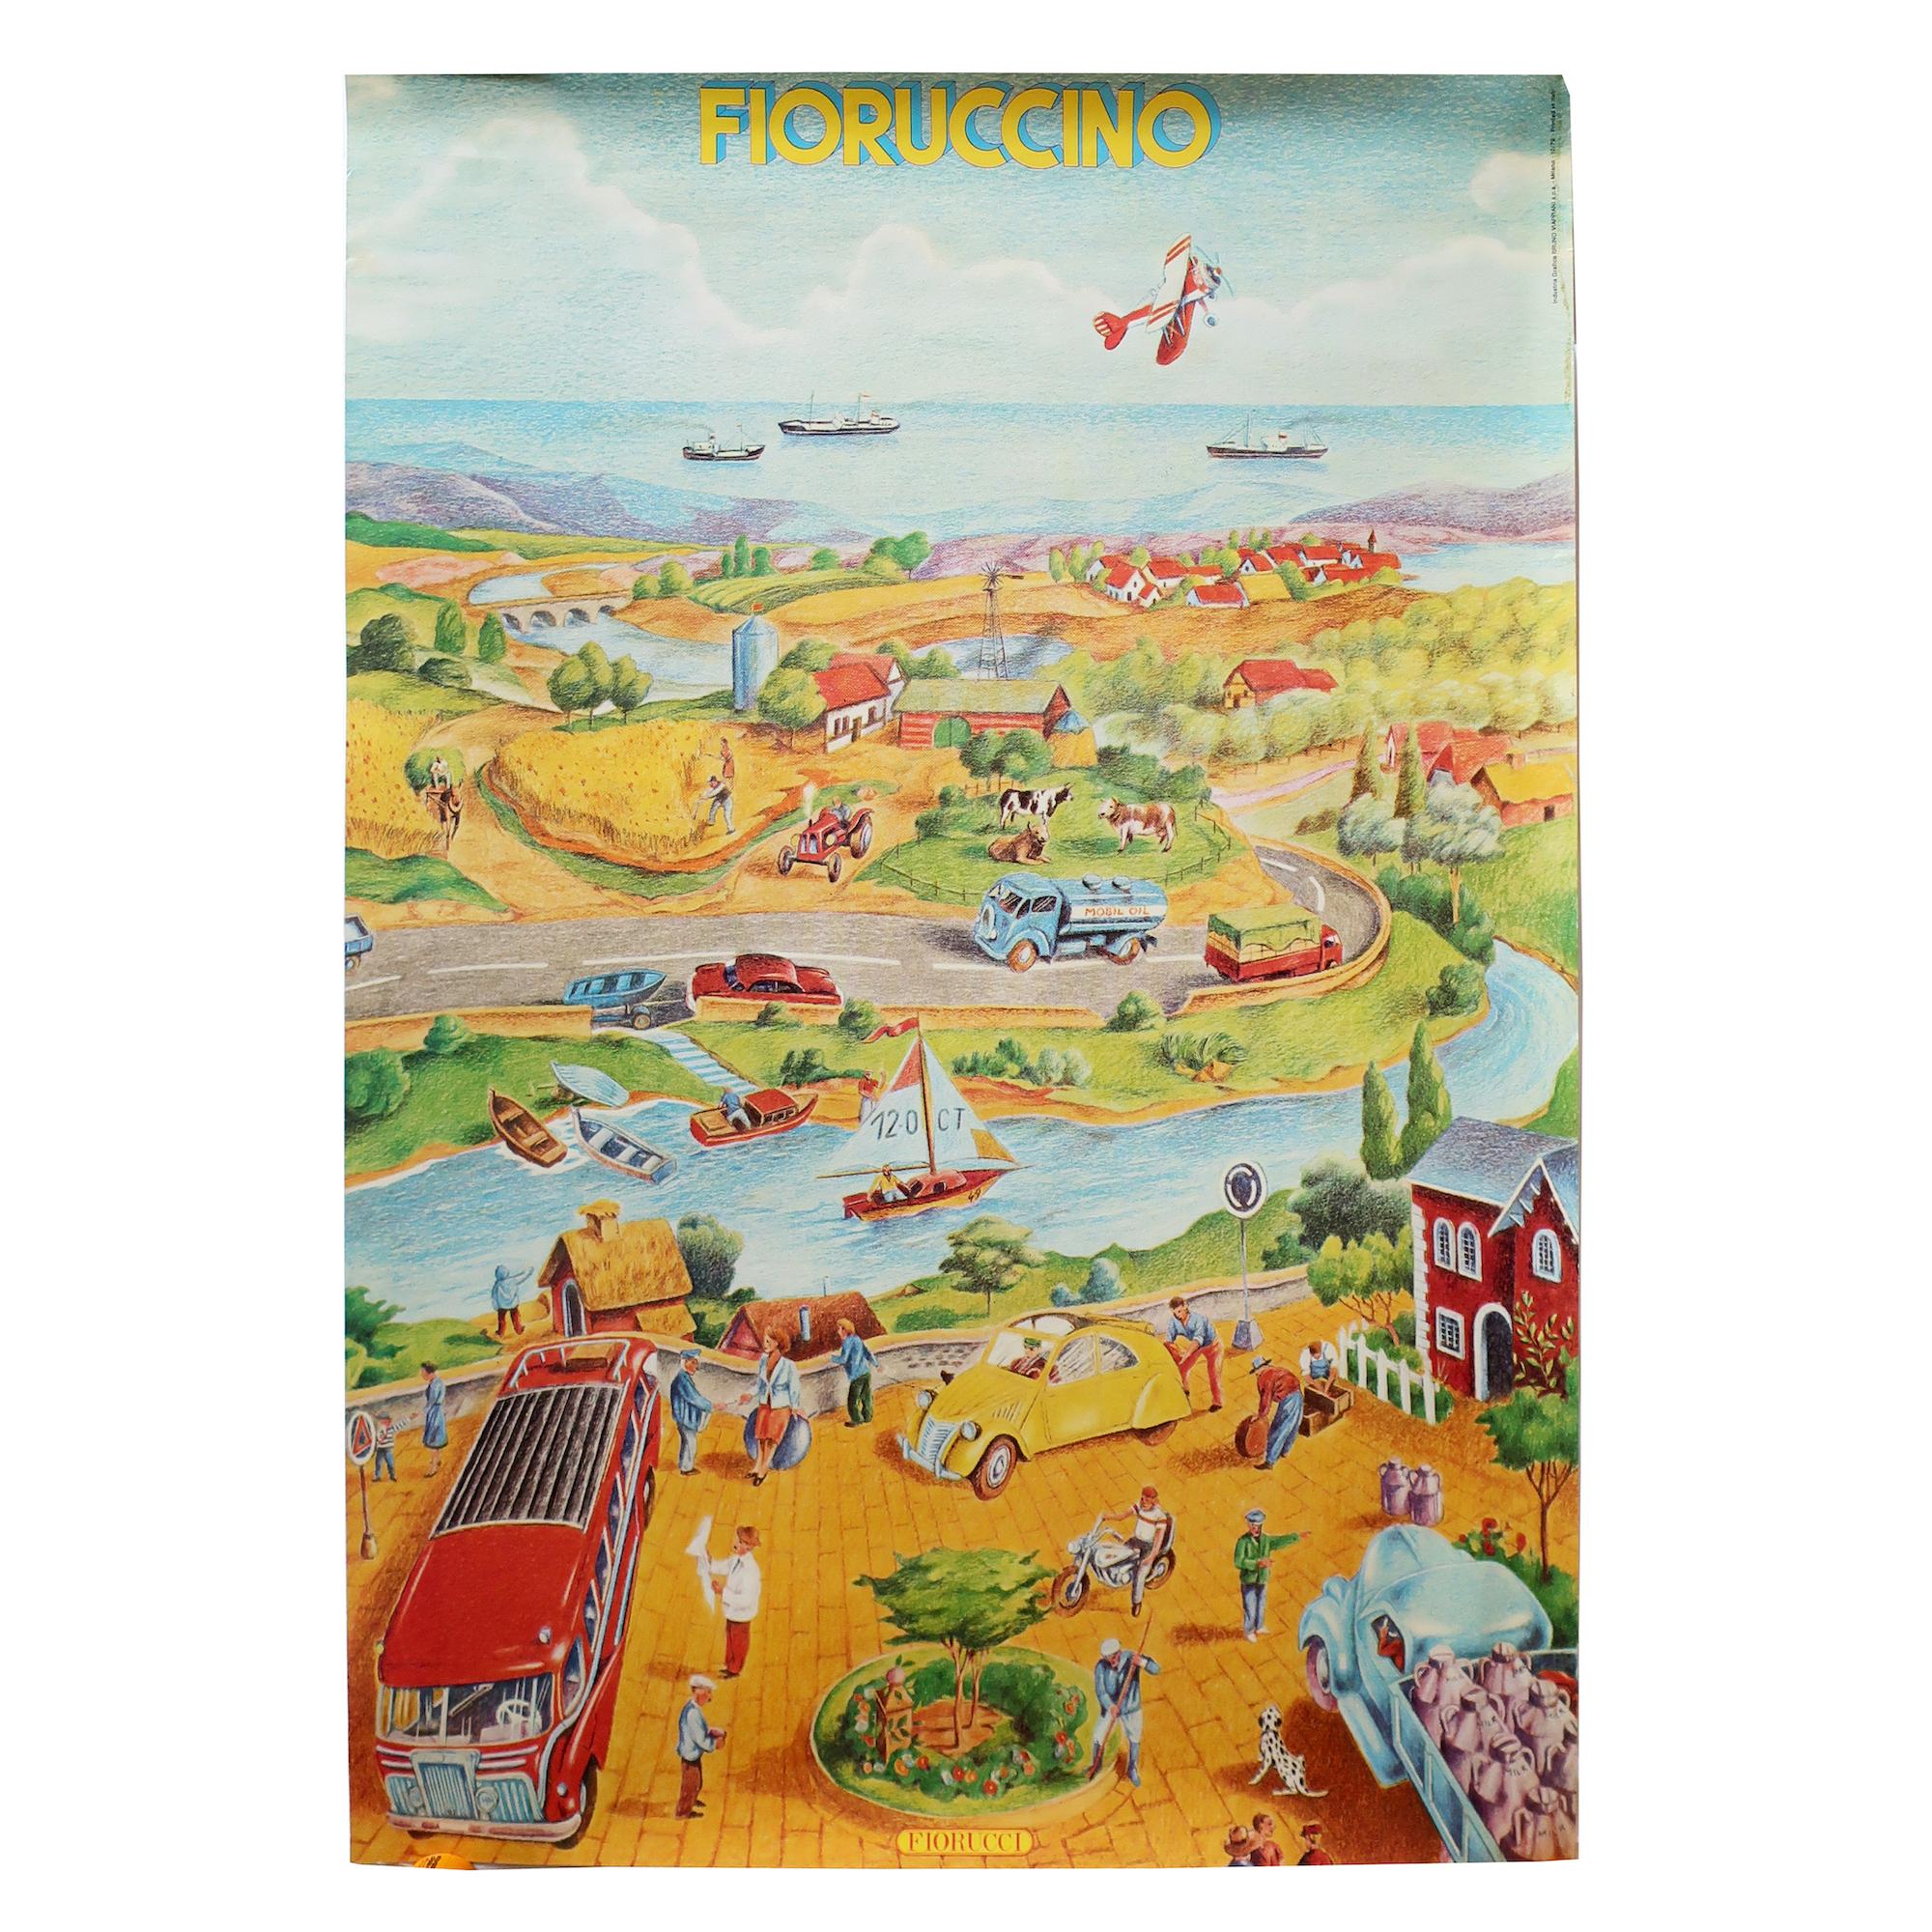 Ein Vintage und seltene illustrierte Fiorucci Plakat mit einem Blick über die Mitte des Jahrhunderts italienischen Landschaft, von einem Stadtplatz über einen Fluss und über eine Autobahn durch Ackerland und auf das ferne Meer.  Das Poster aus dem